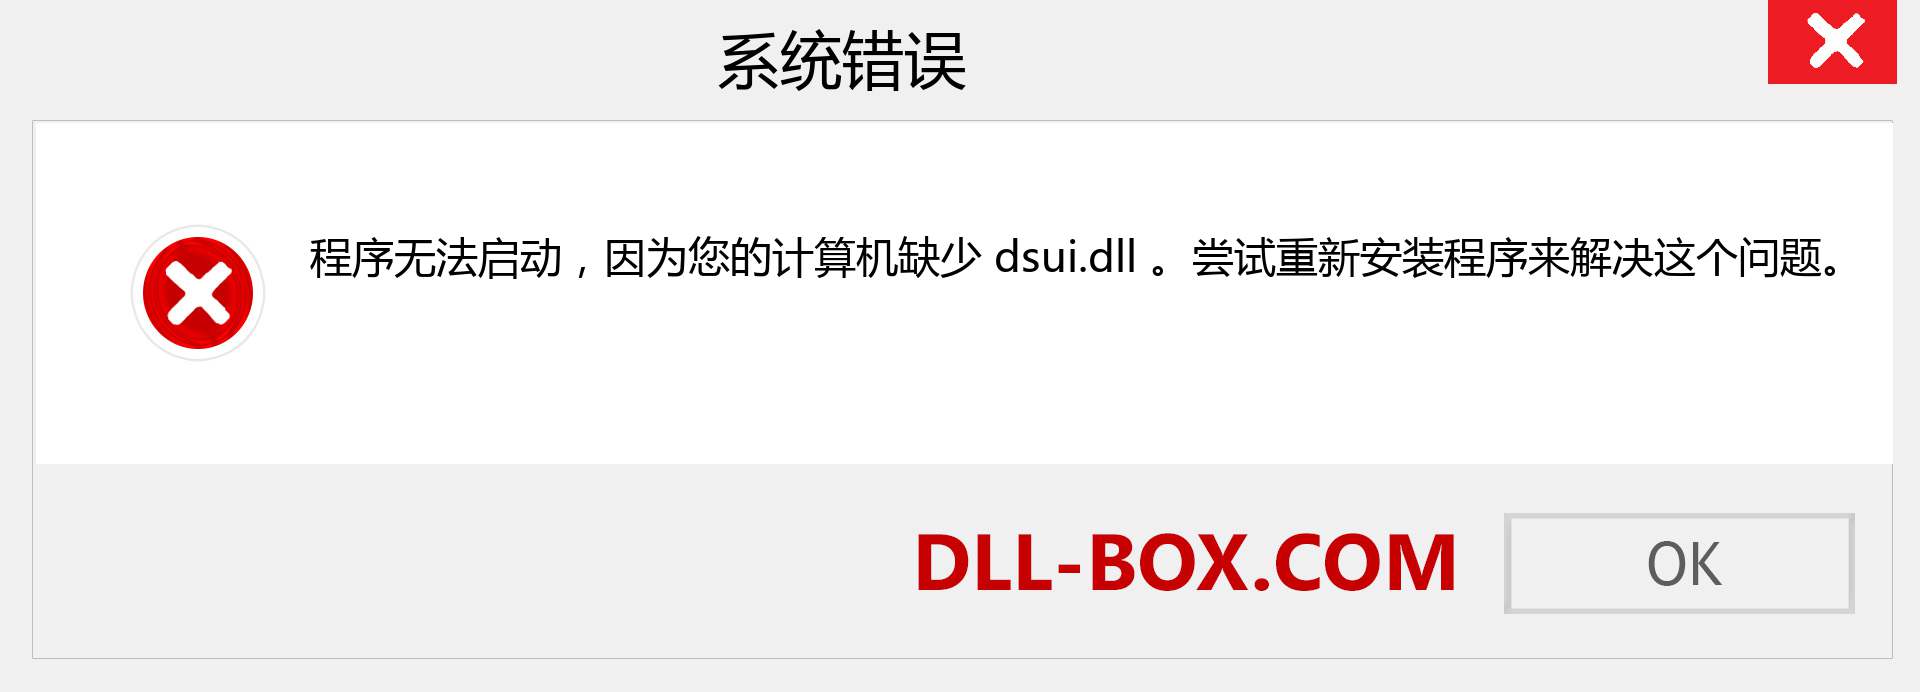 dsui.dll 文件丢失？。 适用于 Windows 7、8、10 的下载 - 修复 Windows、照片、图像上的 dsui dll 丢失错误